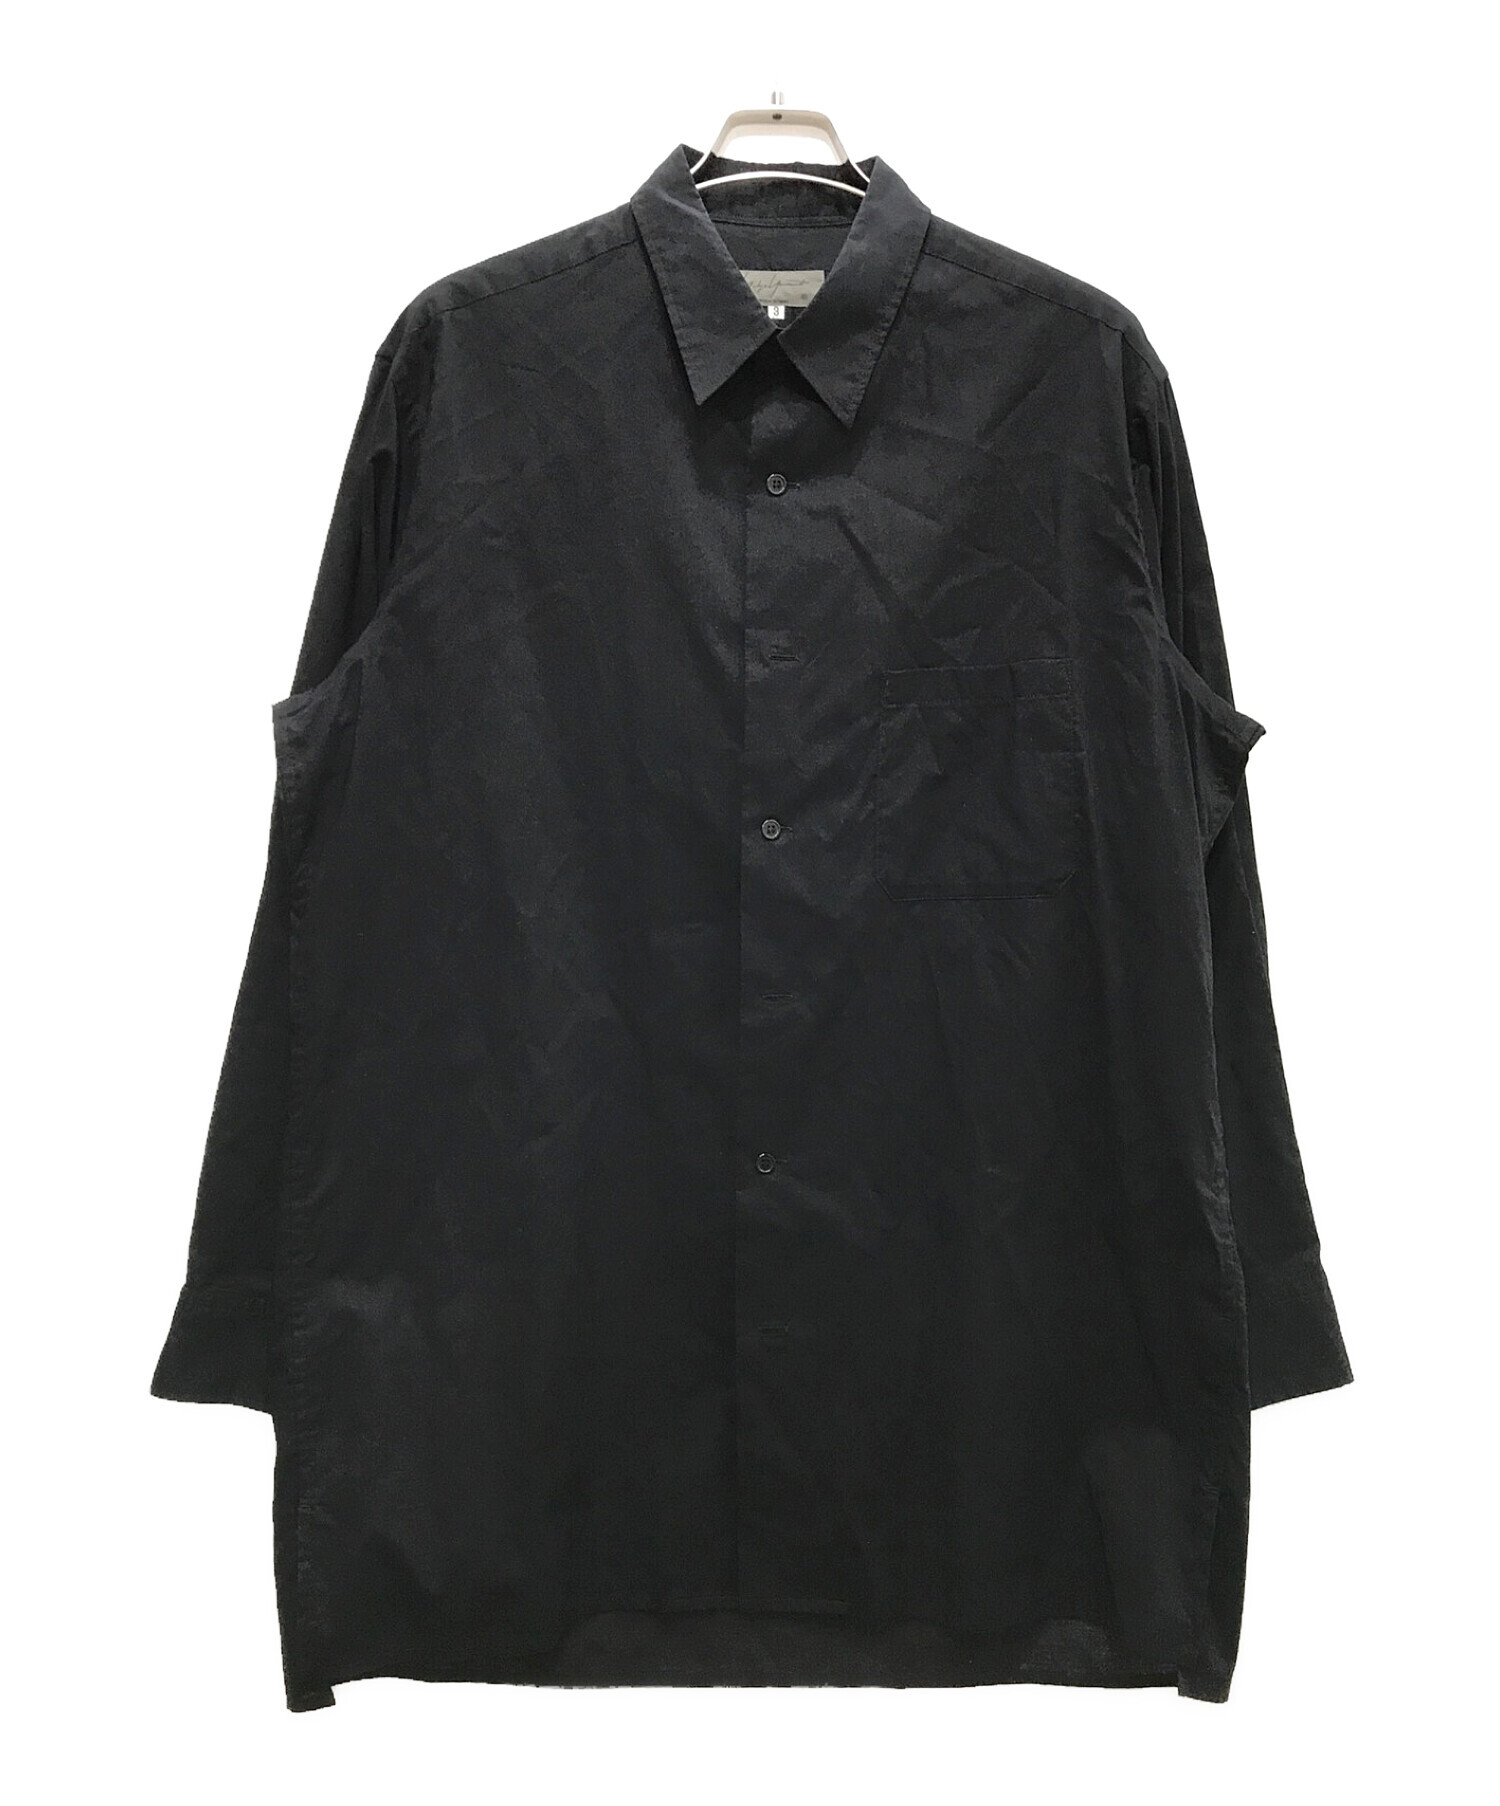 Yohji Yamamoto pour homme (ヨウジヤマモト プールオム) Cotton Loan ビッグシャツ ブラック サイズ:３